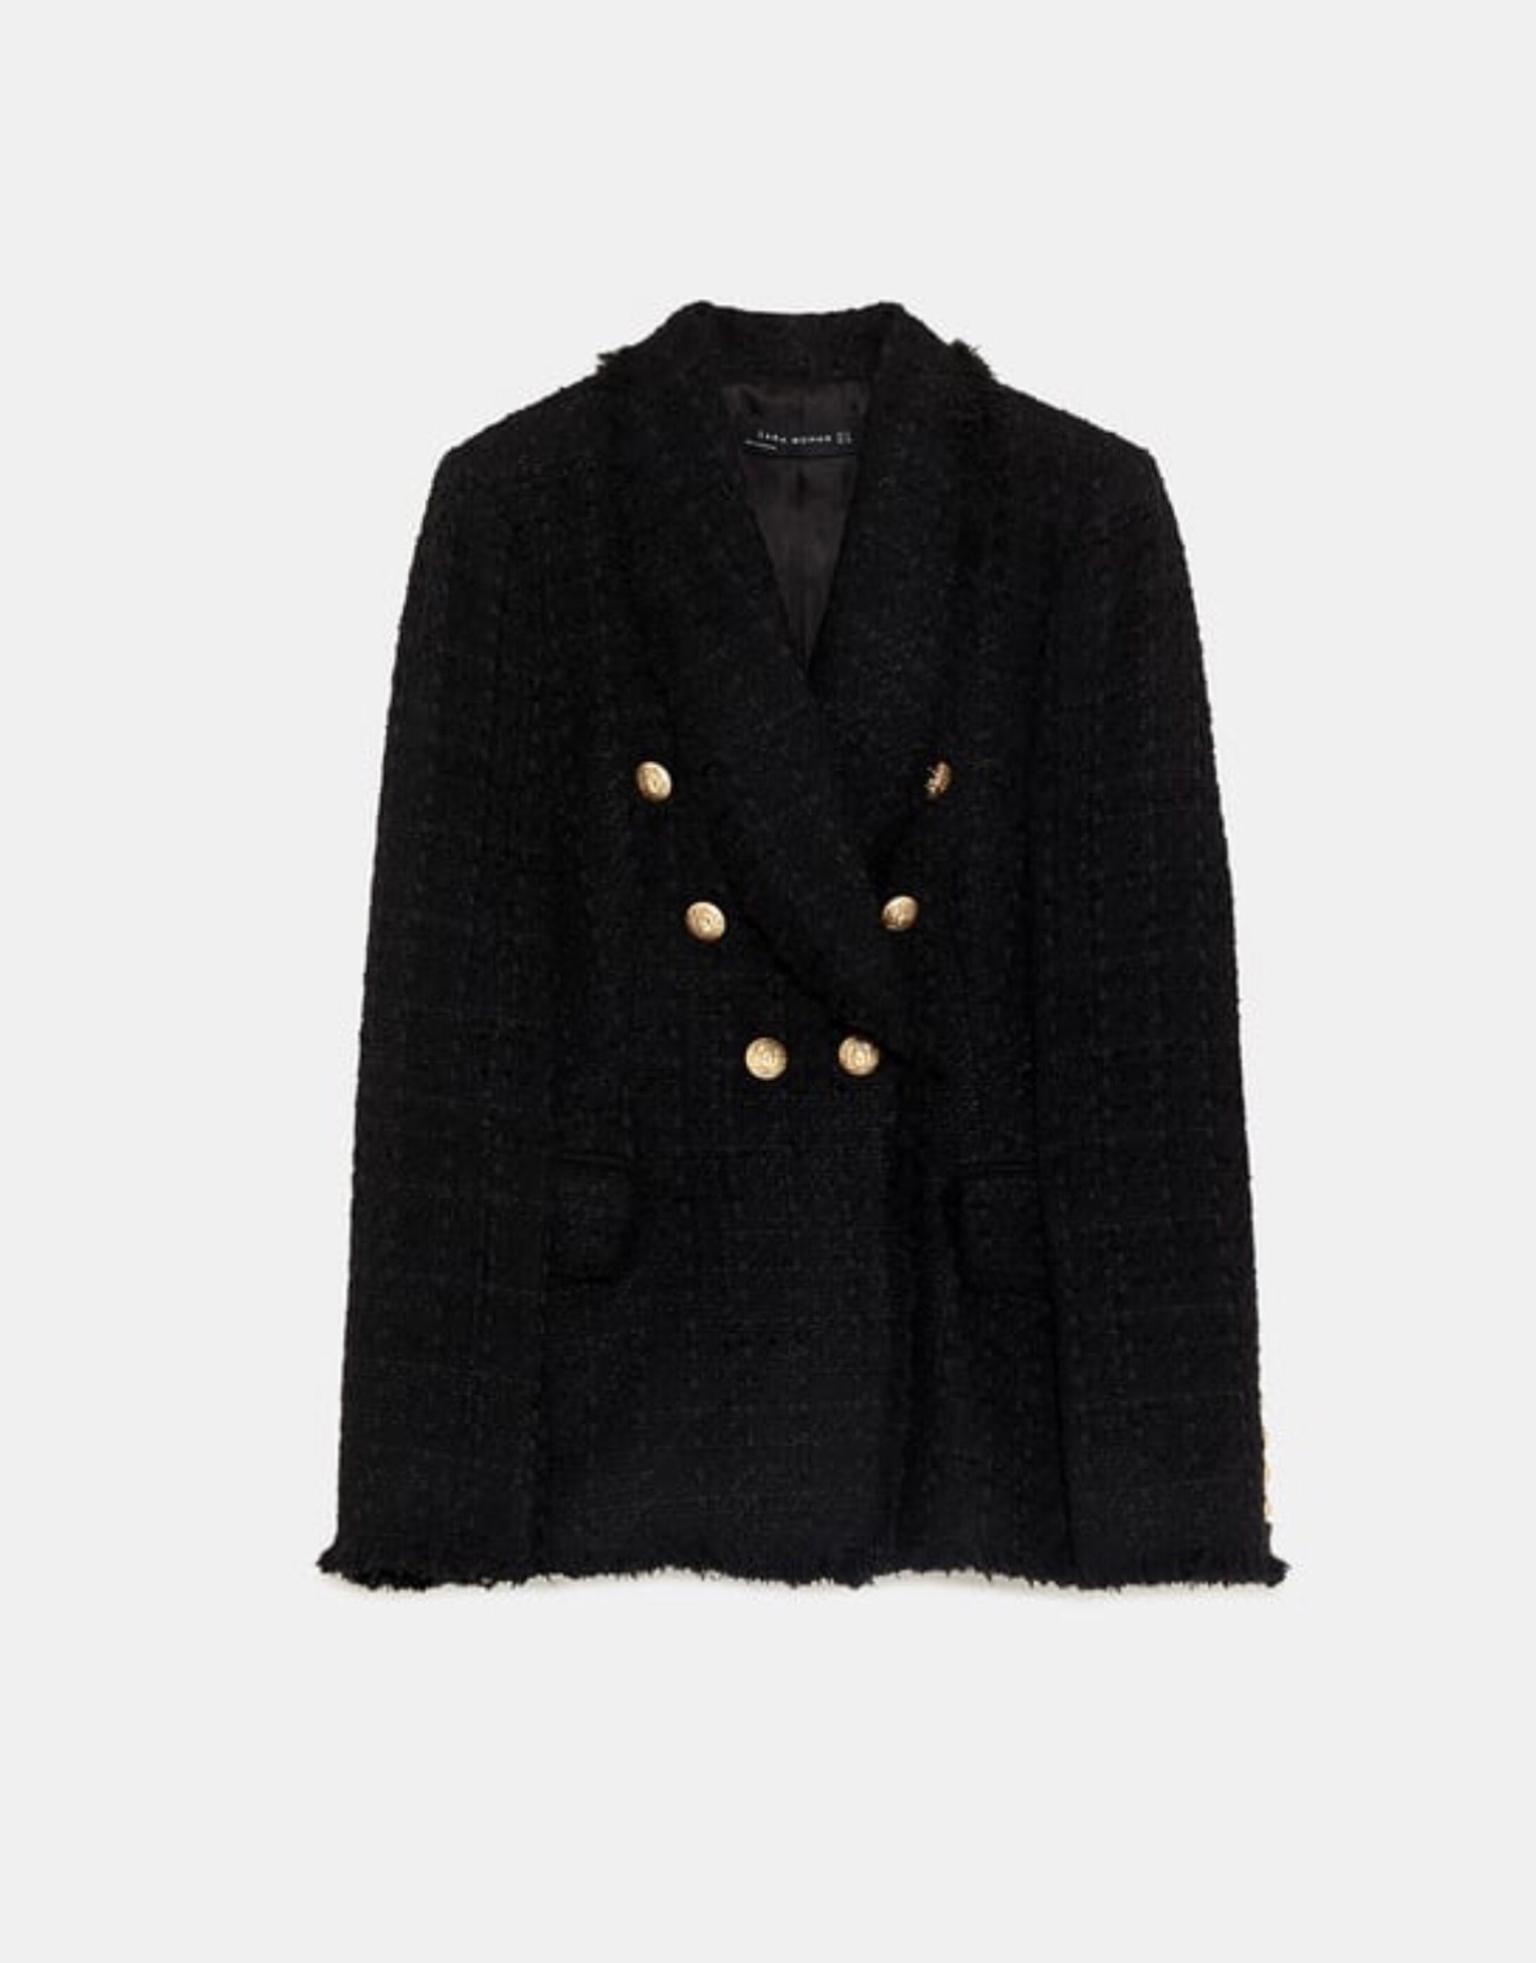 Zara black tweed blazer with gold 